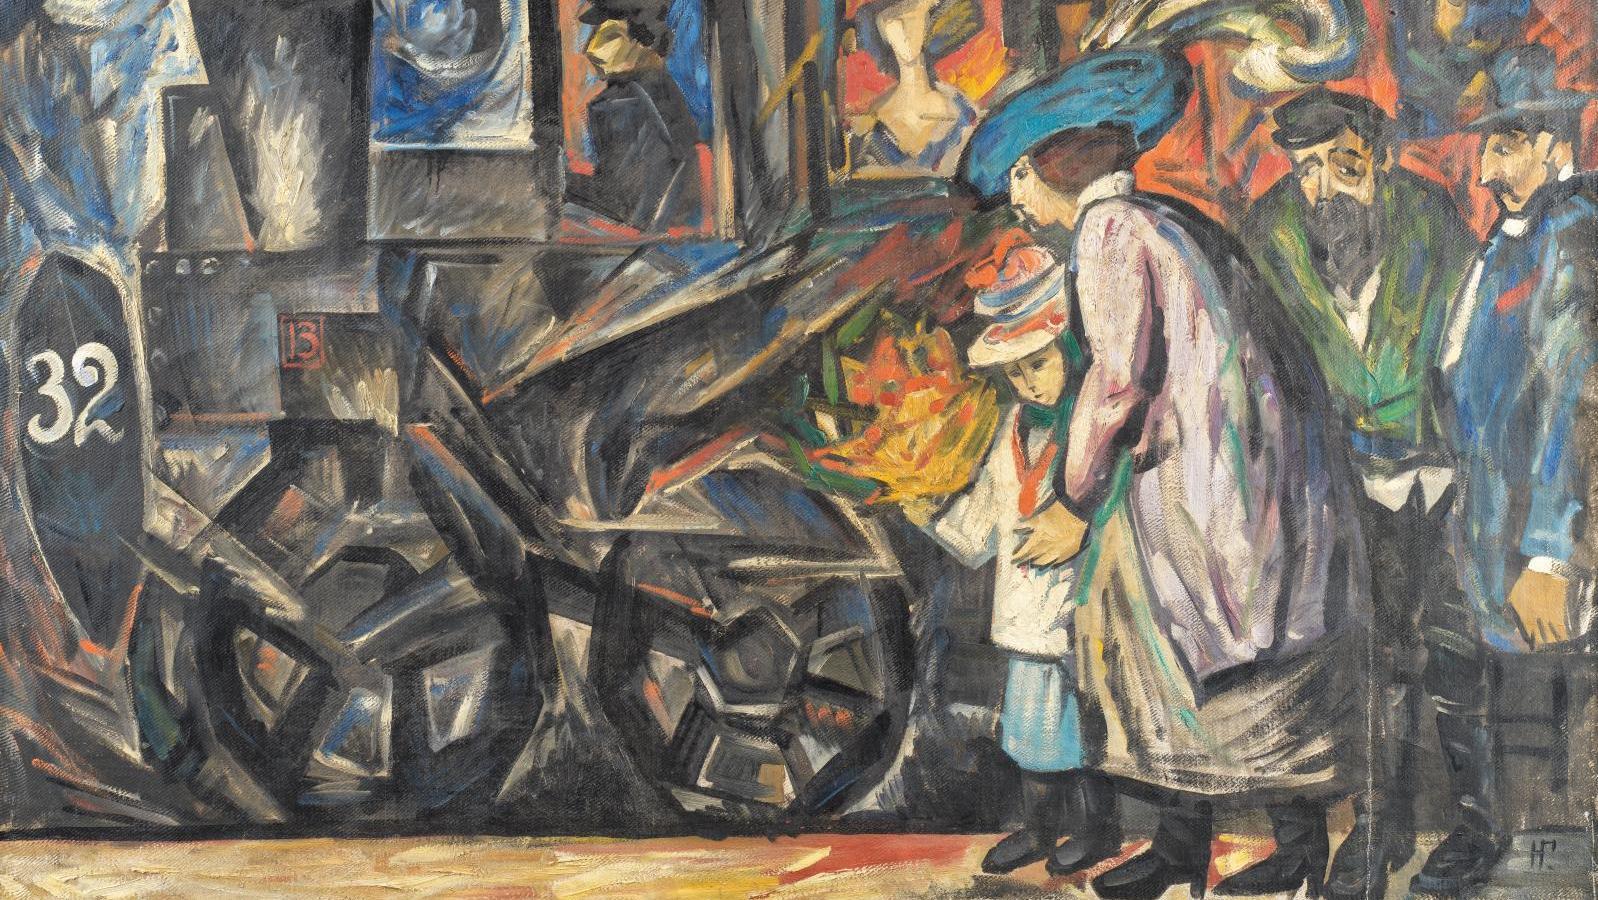 Natalia Goncharova (1881-1962), La Gare (train Station), oil on canvas, c. 1913-1914,... The Natalia Goncharova Choice